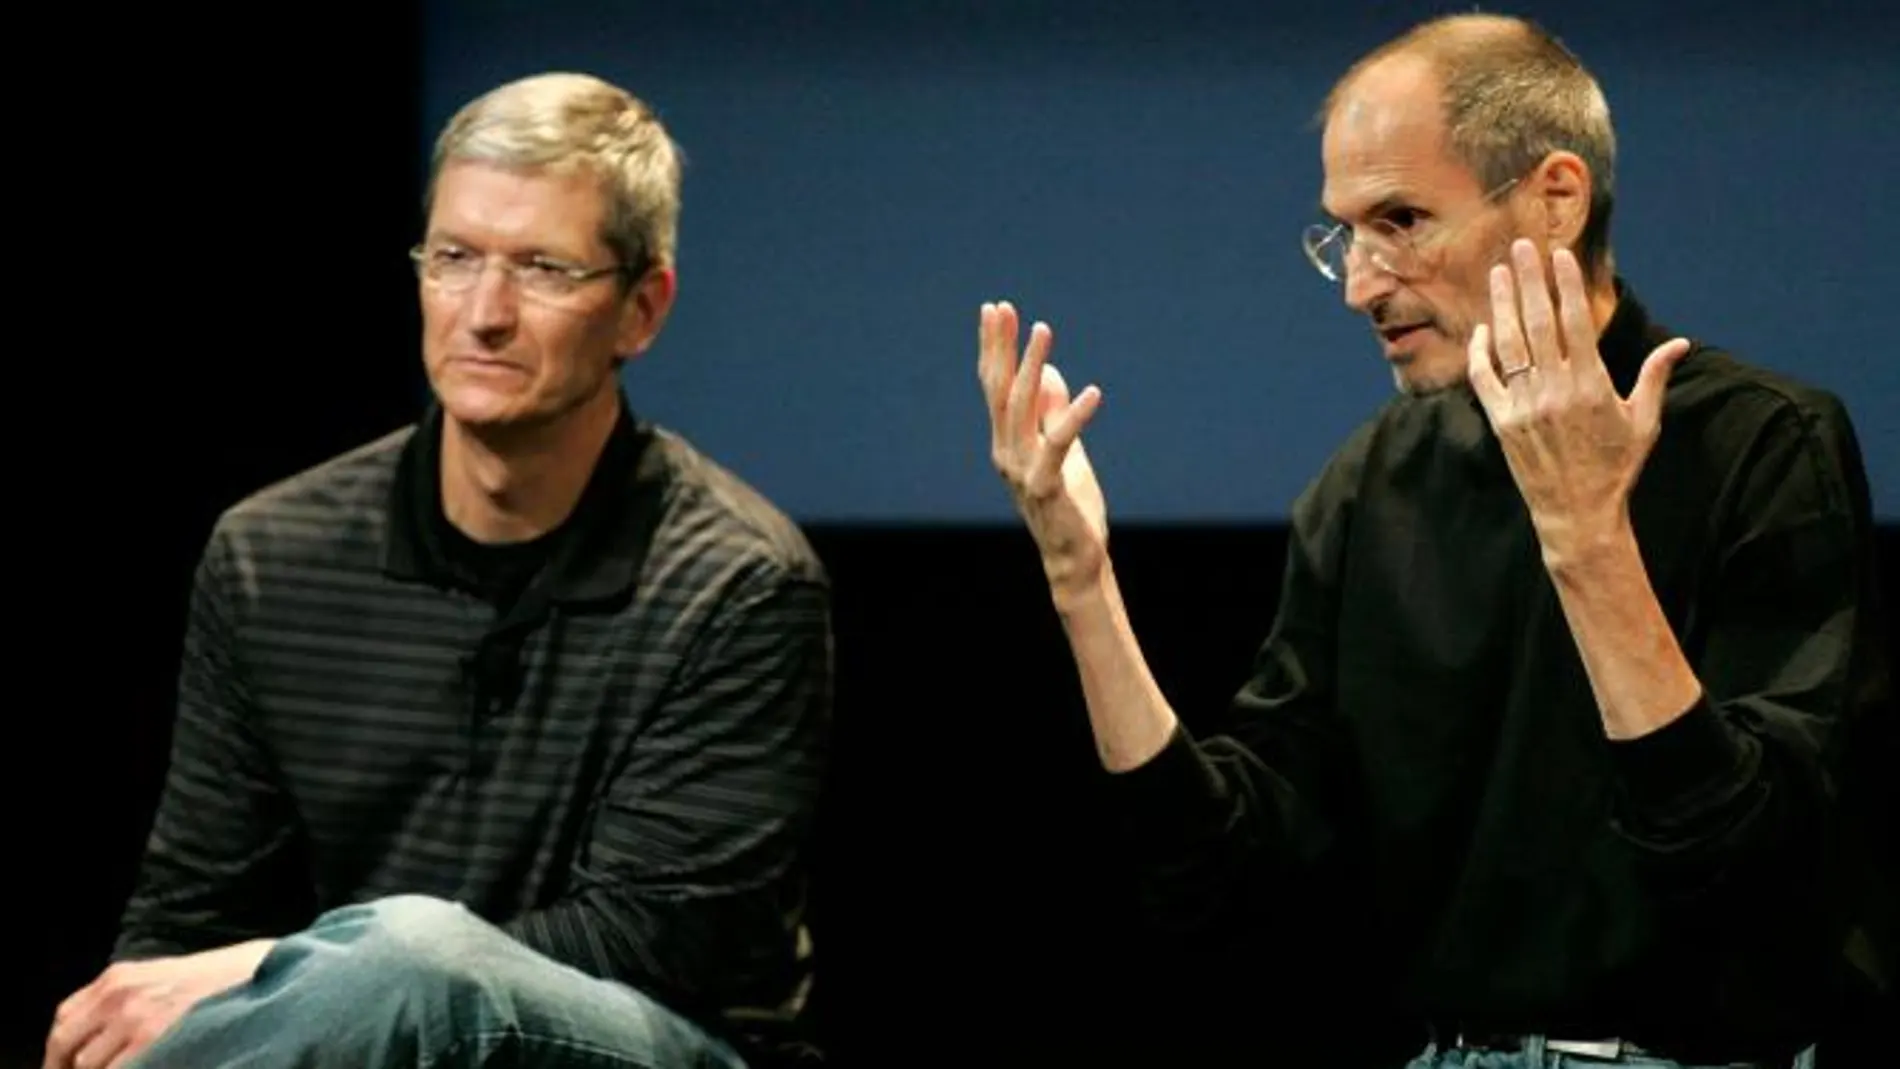 Tim Cook junto a Steve Jobs